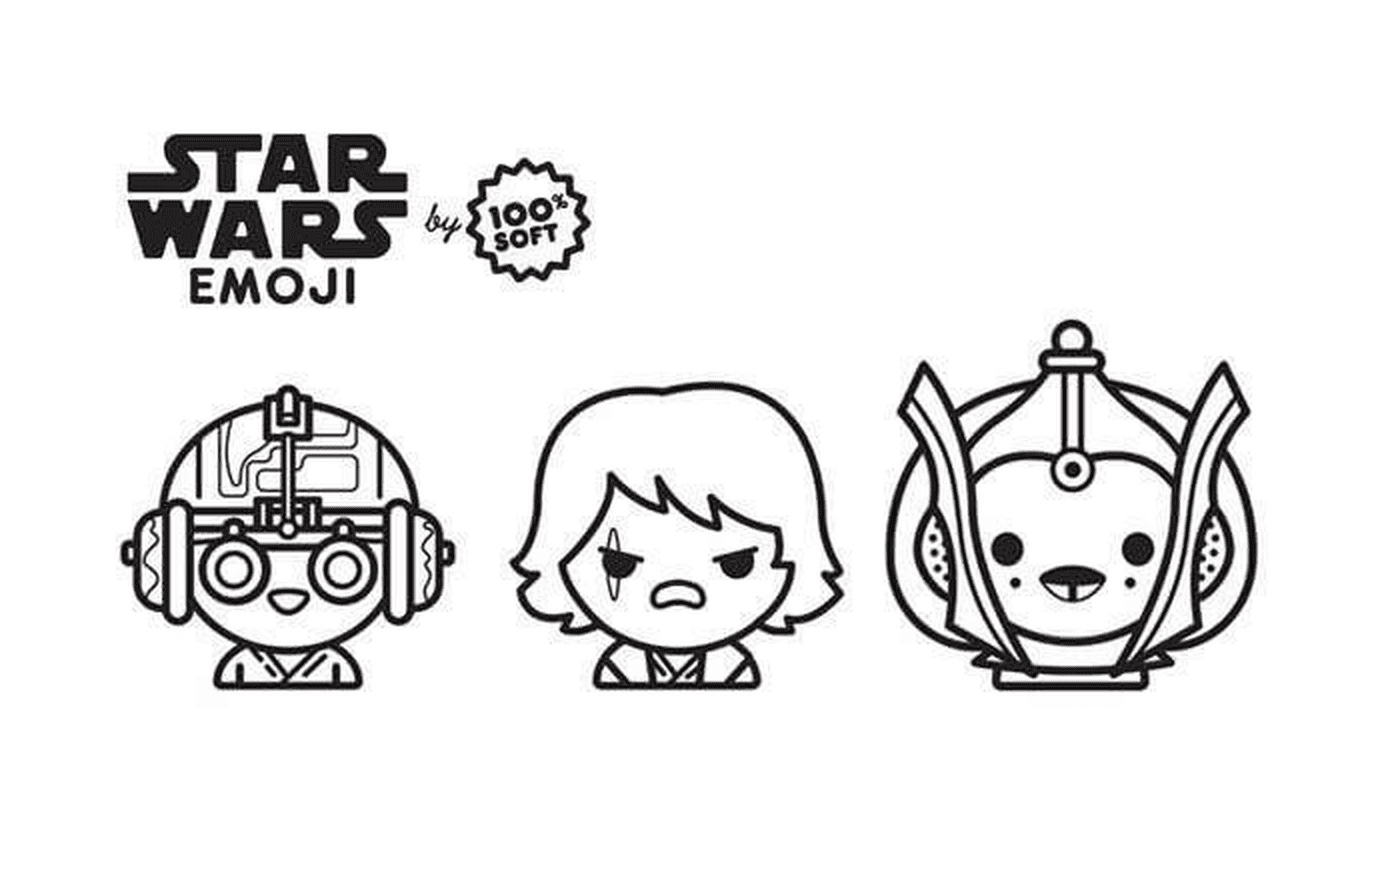  Saga di Emoji Star Wars, Anakin 